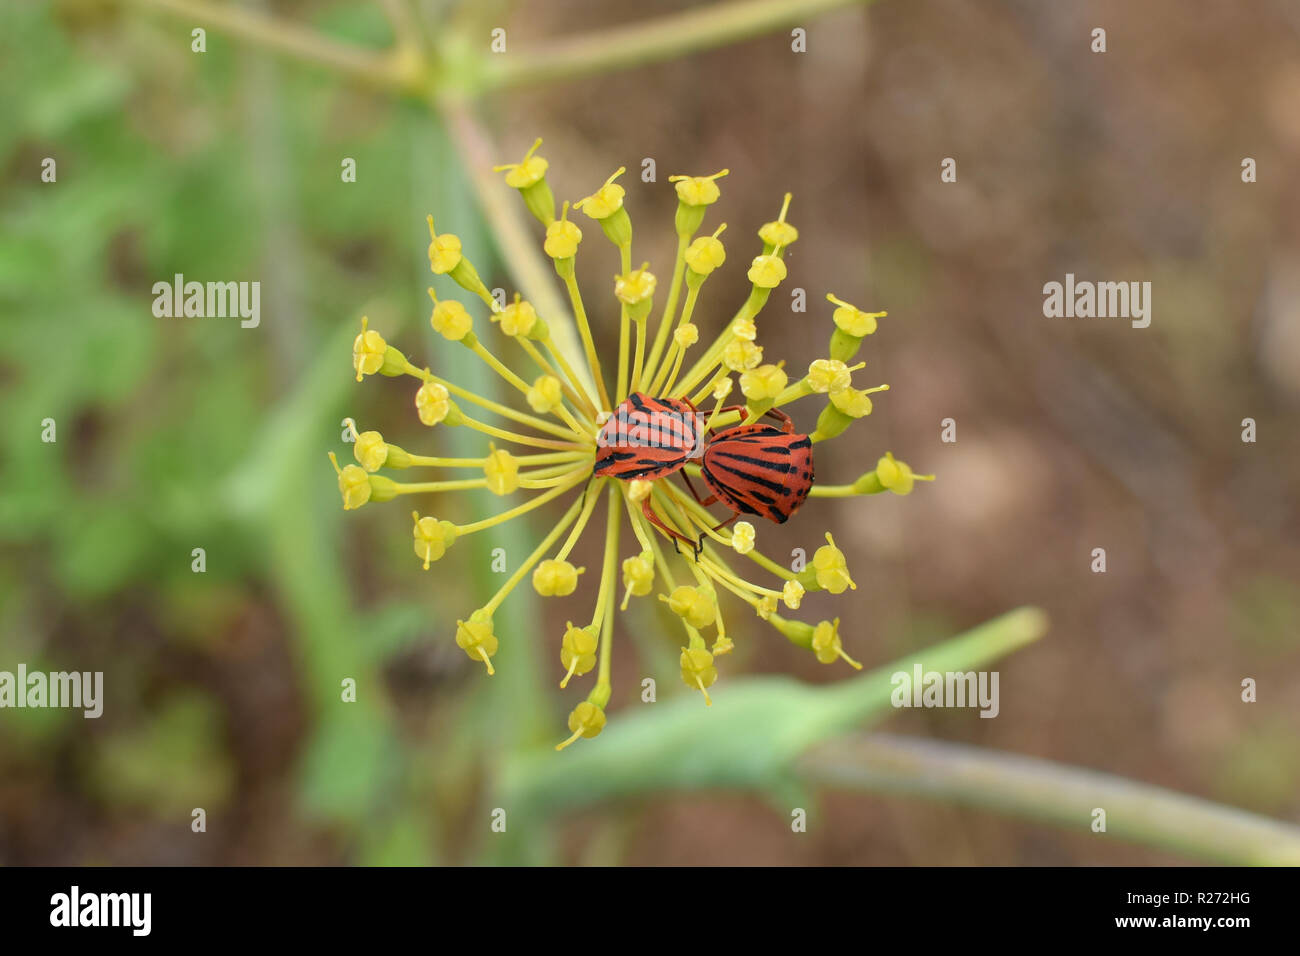 Spielmann Bugs mit roten und schwarzen Streifen Paaren auf Fenchel pflanze Blume. Graphosoma semipunctatum Insekten. Stockfoto